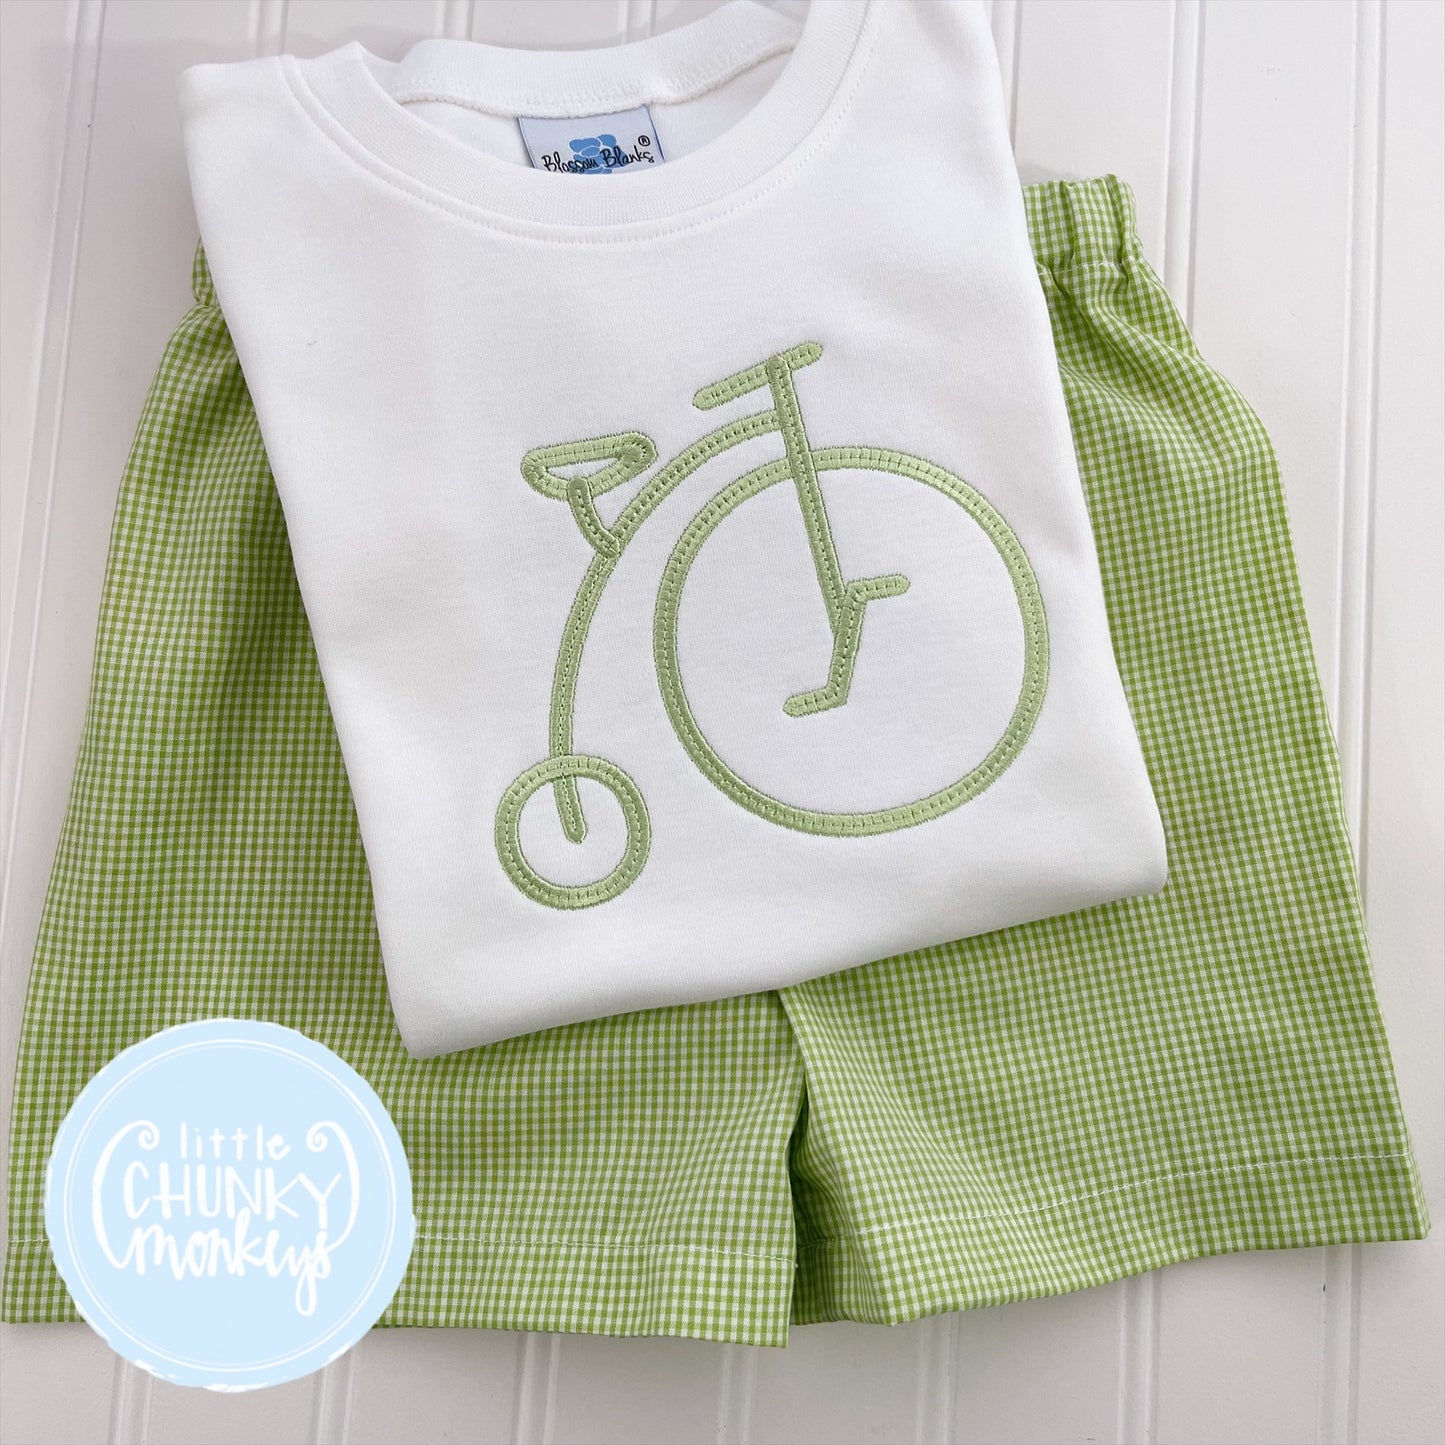 Boy Shirt - Bicycle